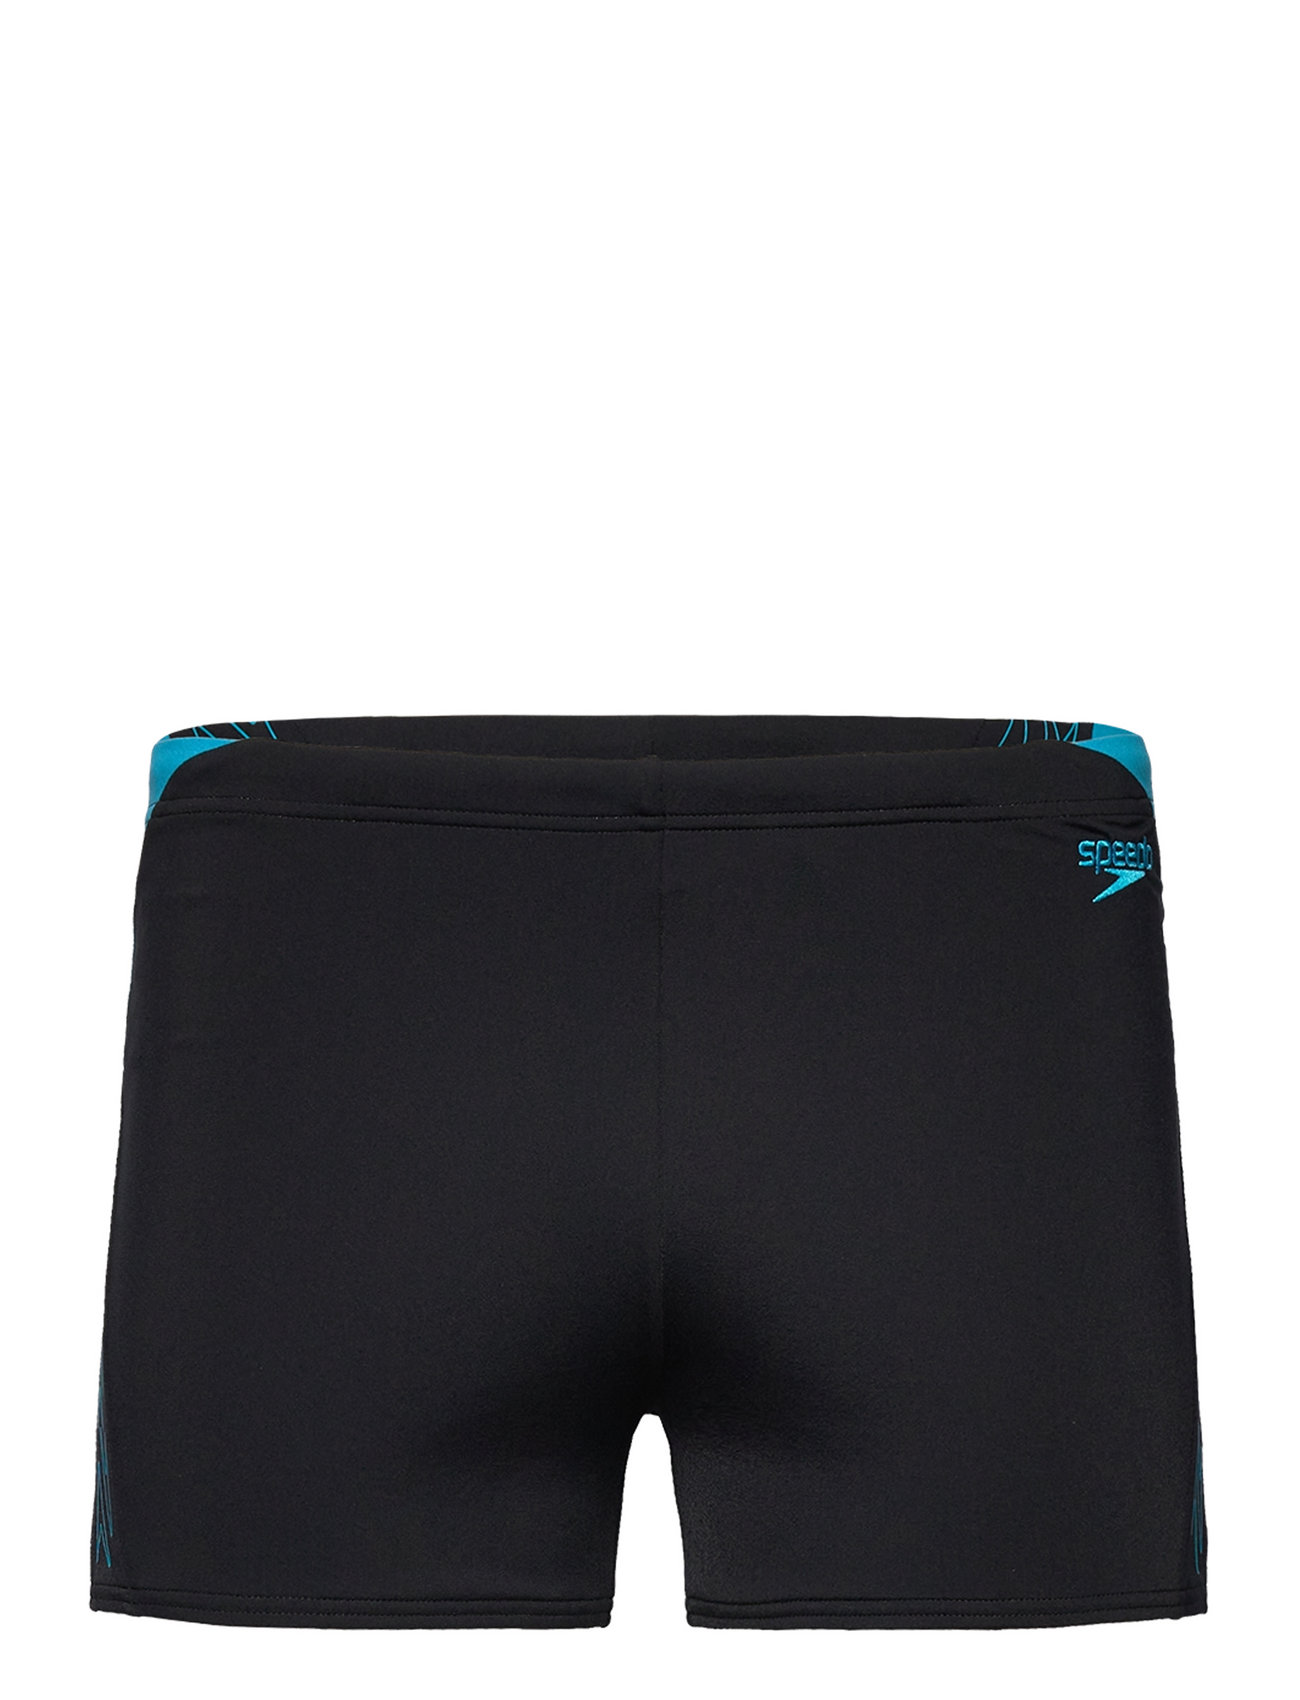 Mens Hyperboom Splice Aquashort Sport Shorts Black Speedo